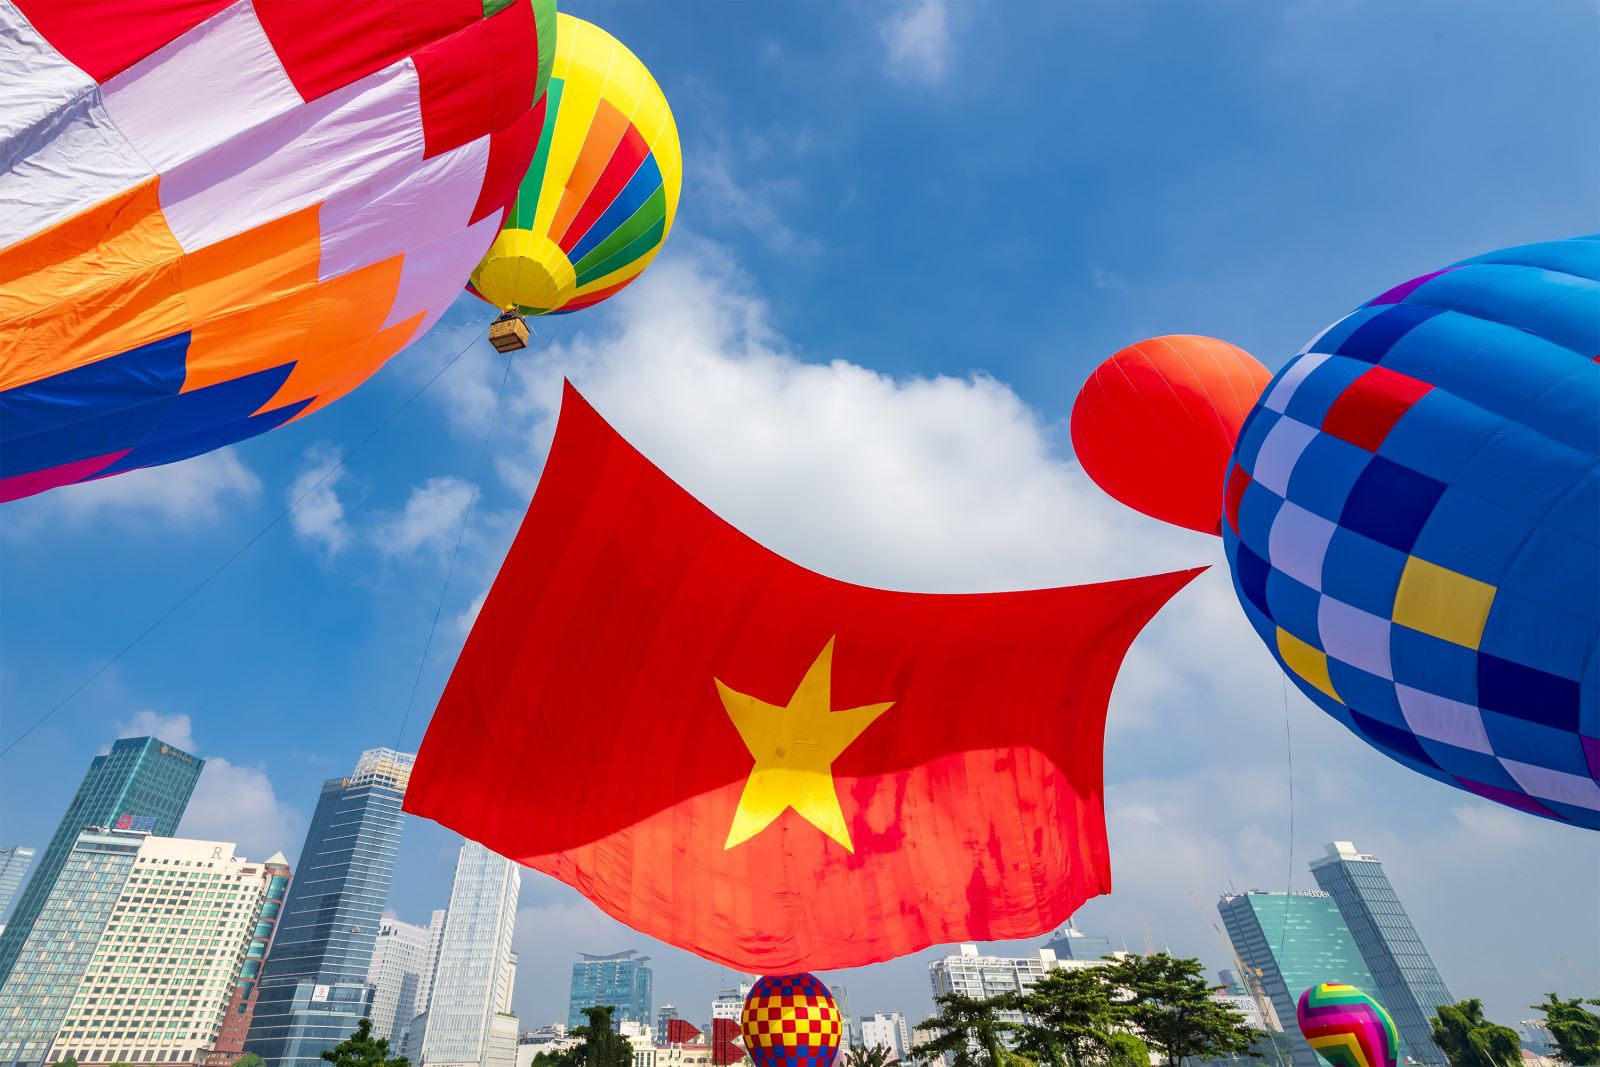 Đúng 8 giờ ngày 2/9/2022, lá cờ Tổ quốc rộng 1.800 m2 đã bay trên sông Sài Gòn để chào mừng ngày lễ Quốc khánh 2/9 tại TP Hồ Chí Minh. Ảnh: Mạnh Linh - Hoàng Tuyết/Báo Tin tức